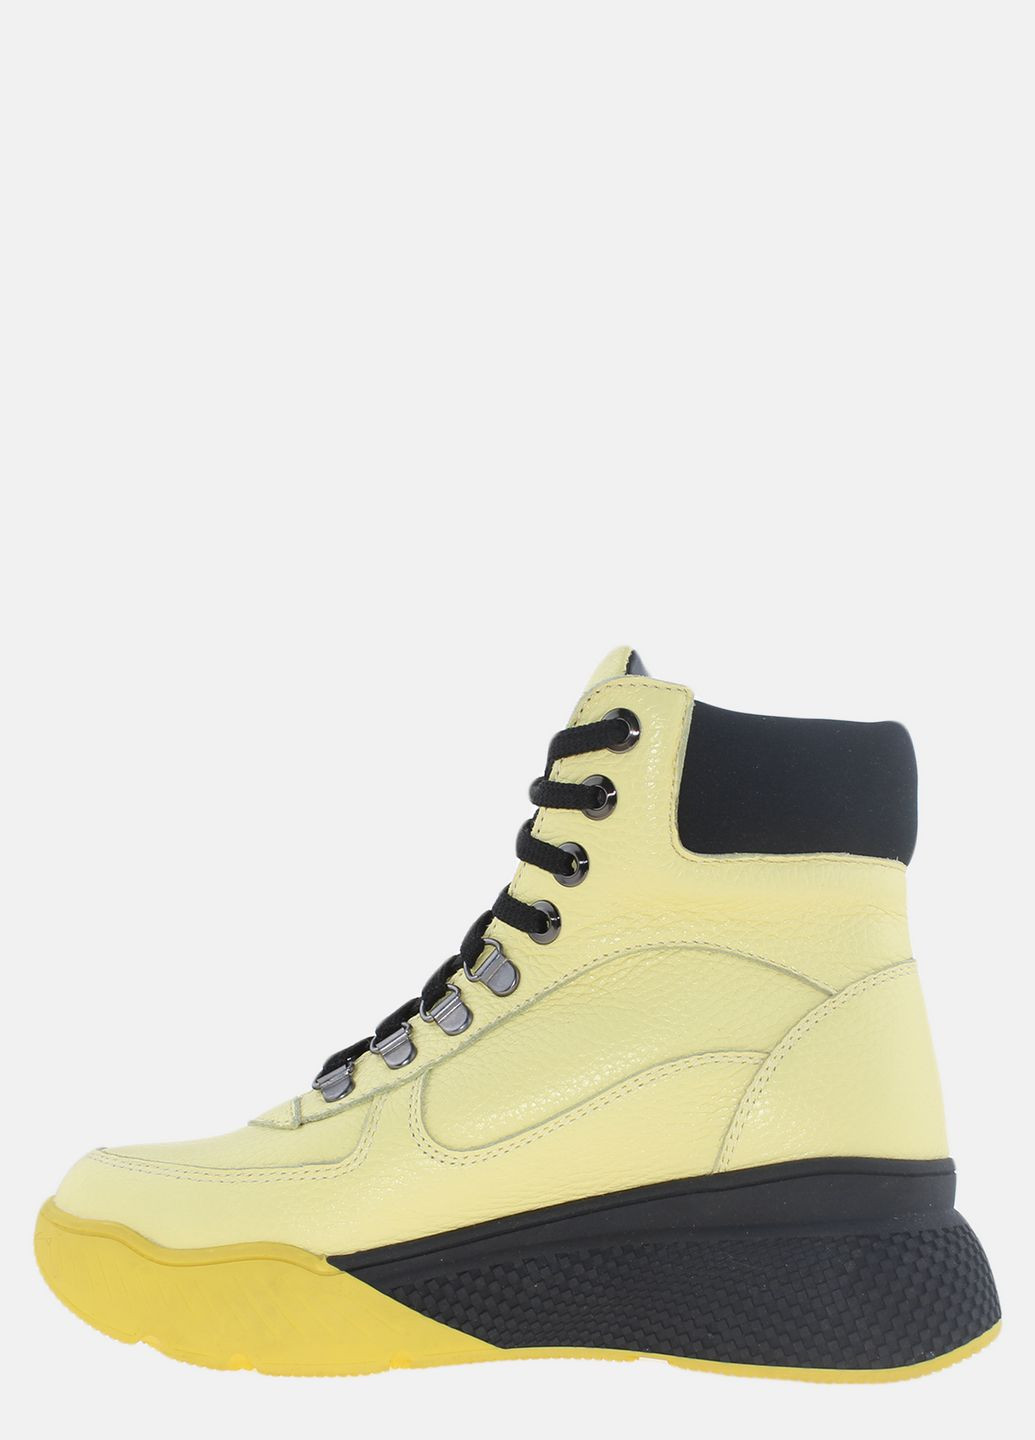 Зимние ботинки r1123-88-22 жёлтый Prellesta